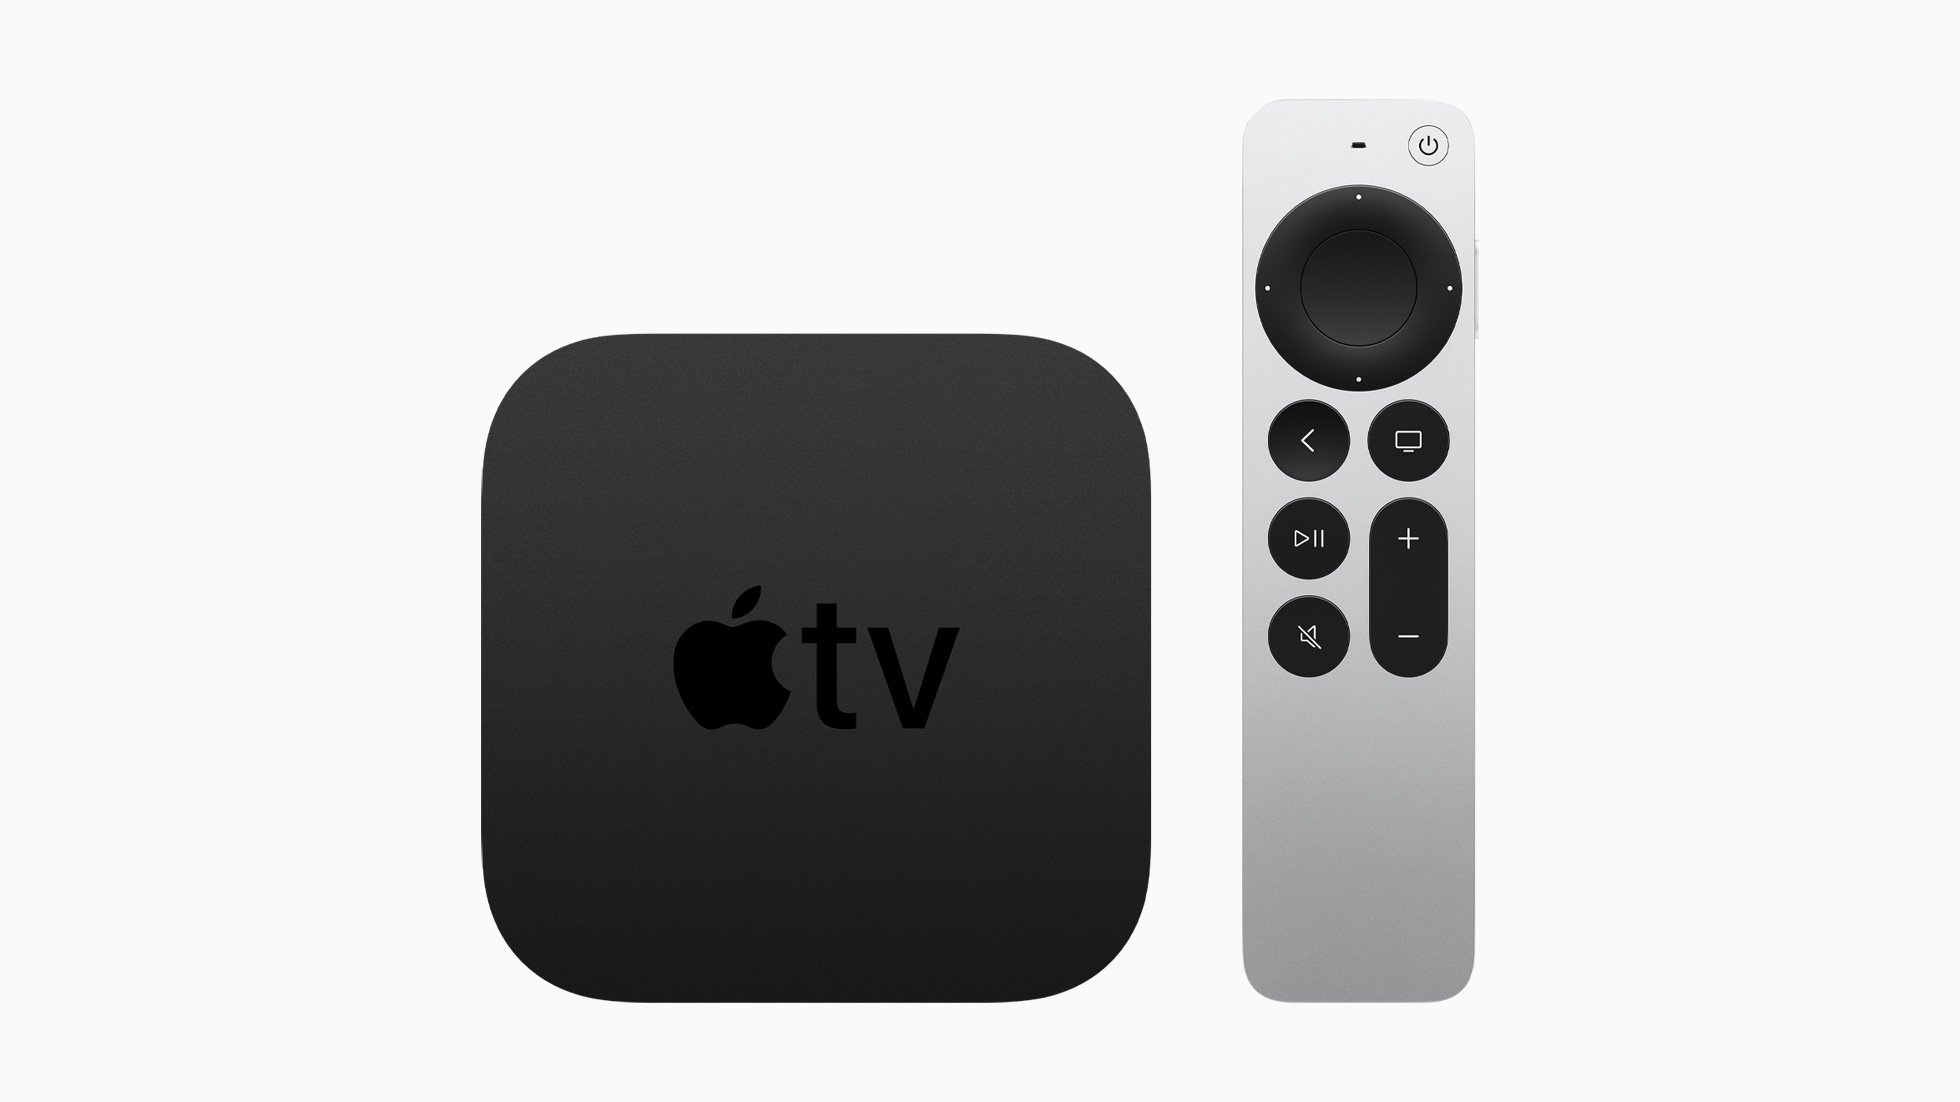 Oferta: obtén un Apple TV HD de Amazon por menos de $ 125